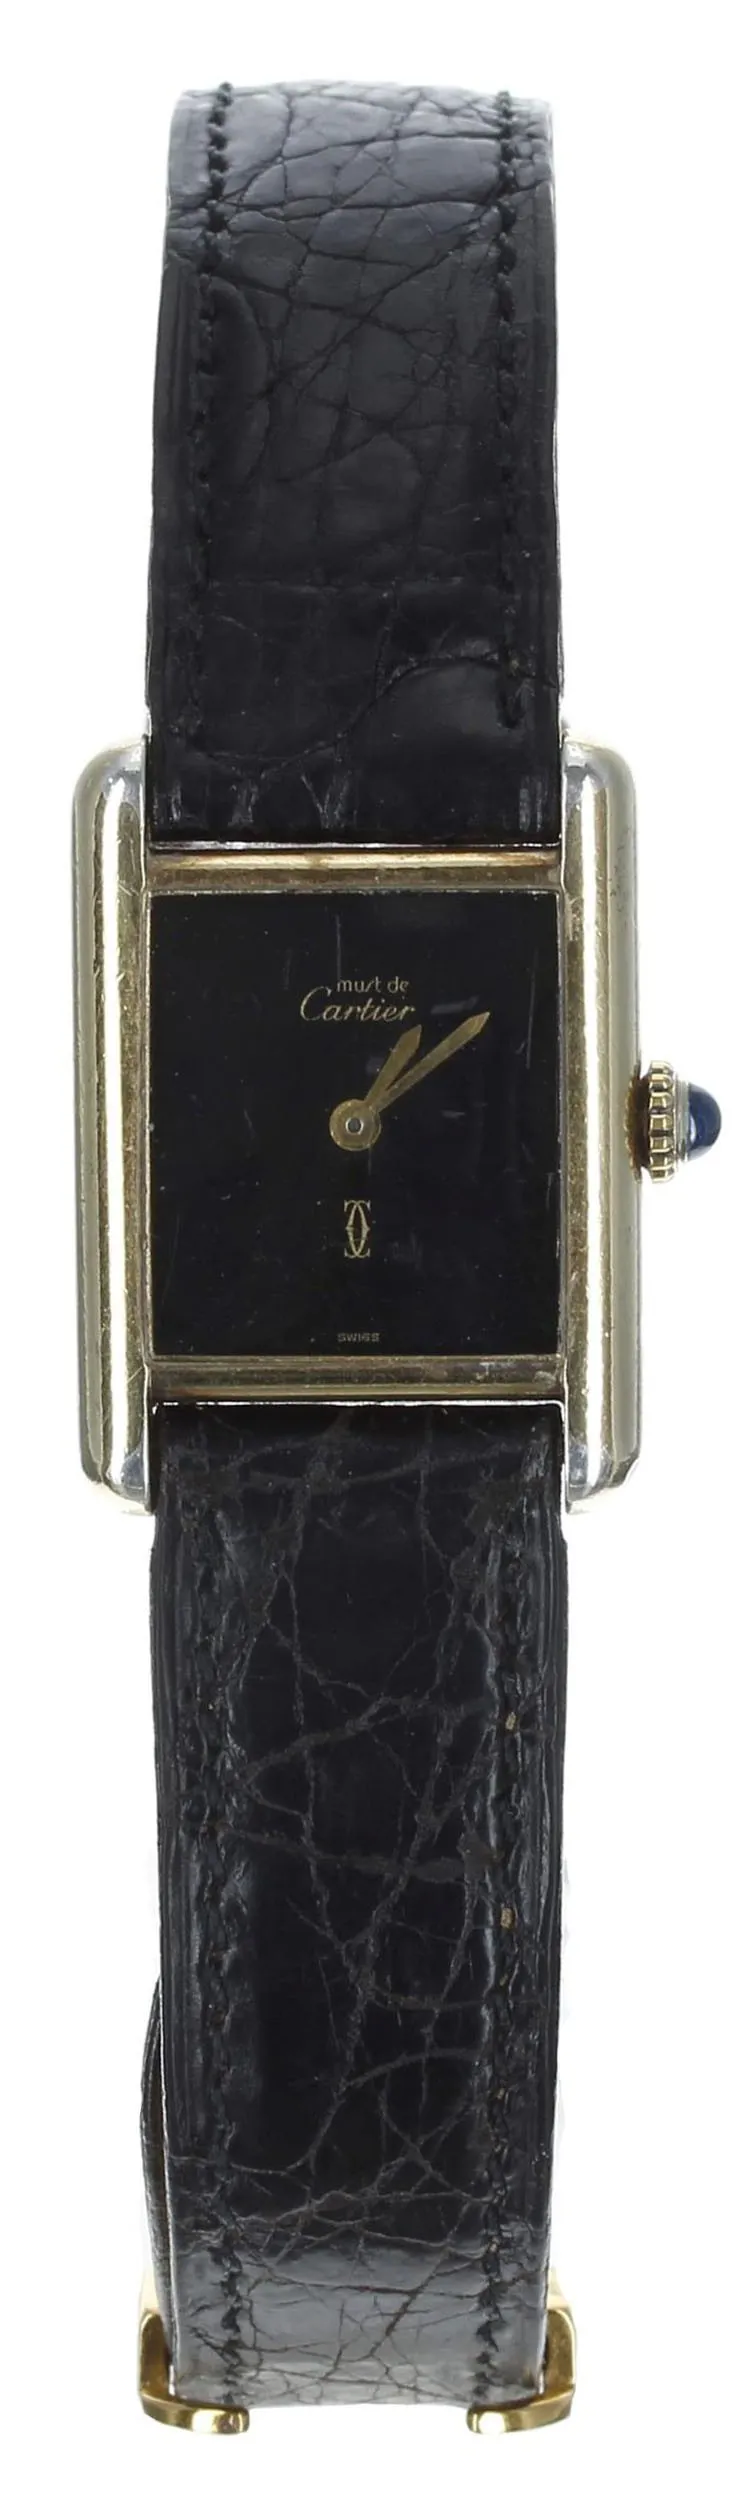 Cartier Must de Cartier 28mm Silver Black